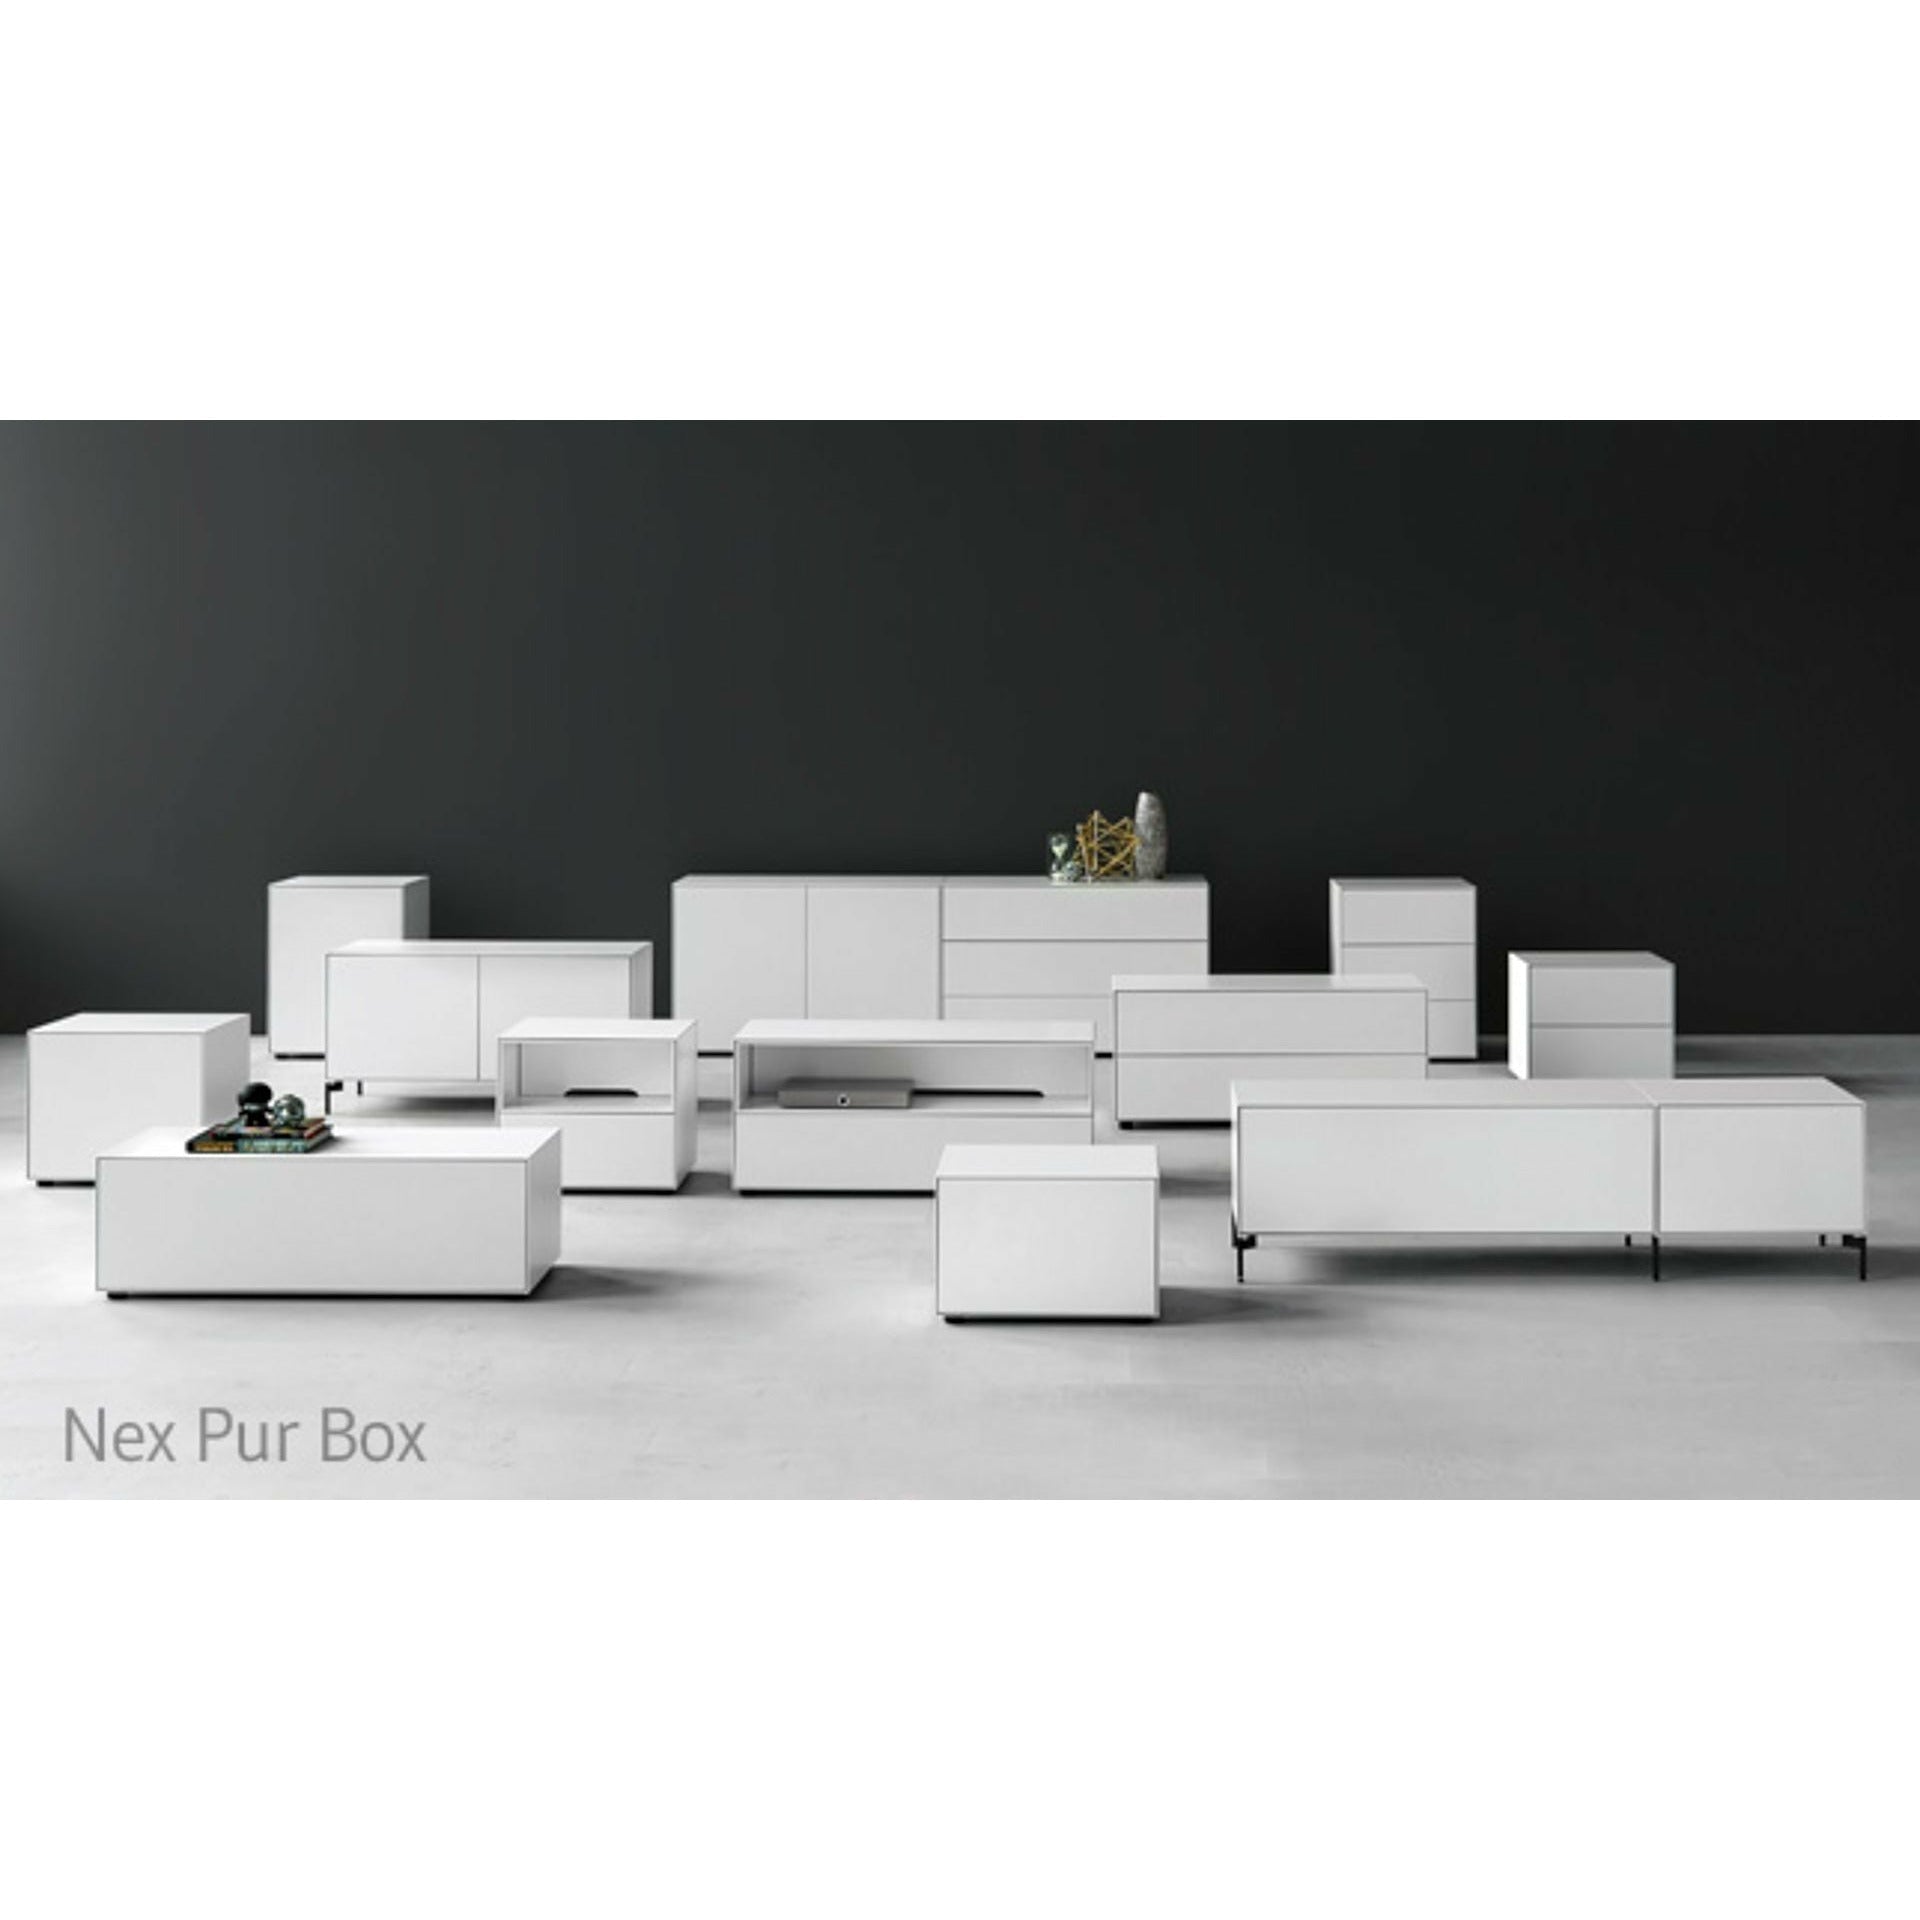 Piure Nex Pur Box szuflada/drzwi HX W 50x180 cm, 2 półki/1 półka